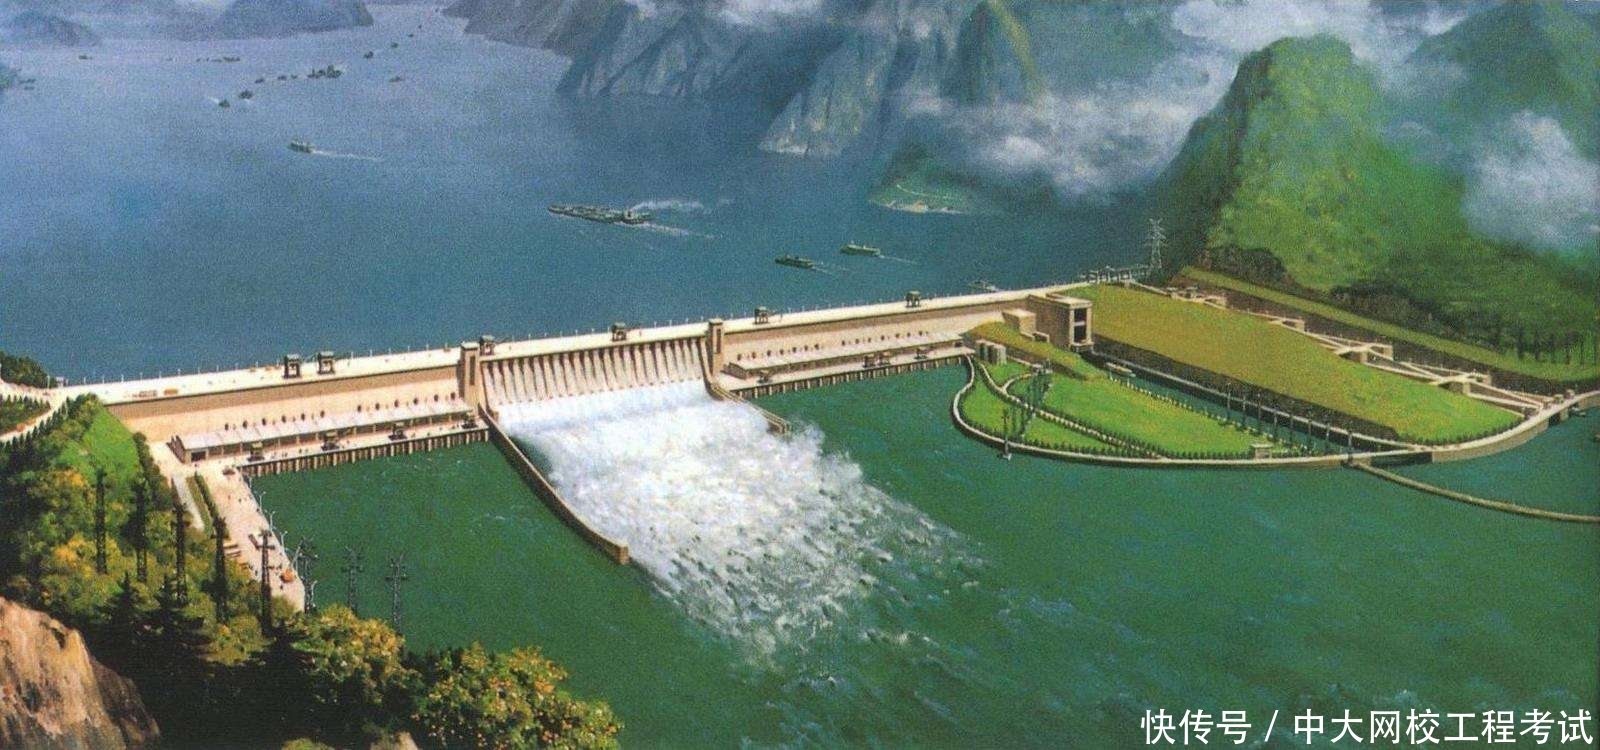 三峡大坝将近200米高!为什么鱼可以逆流而上?